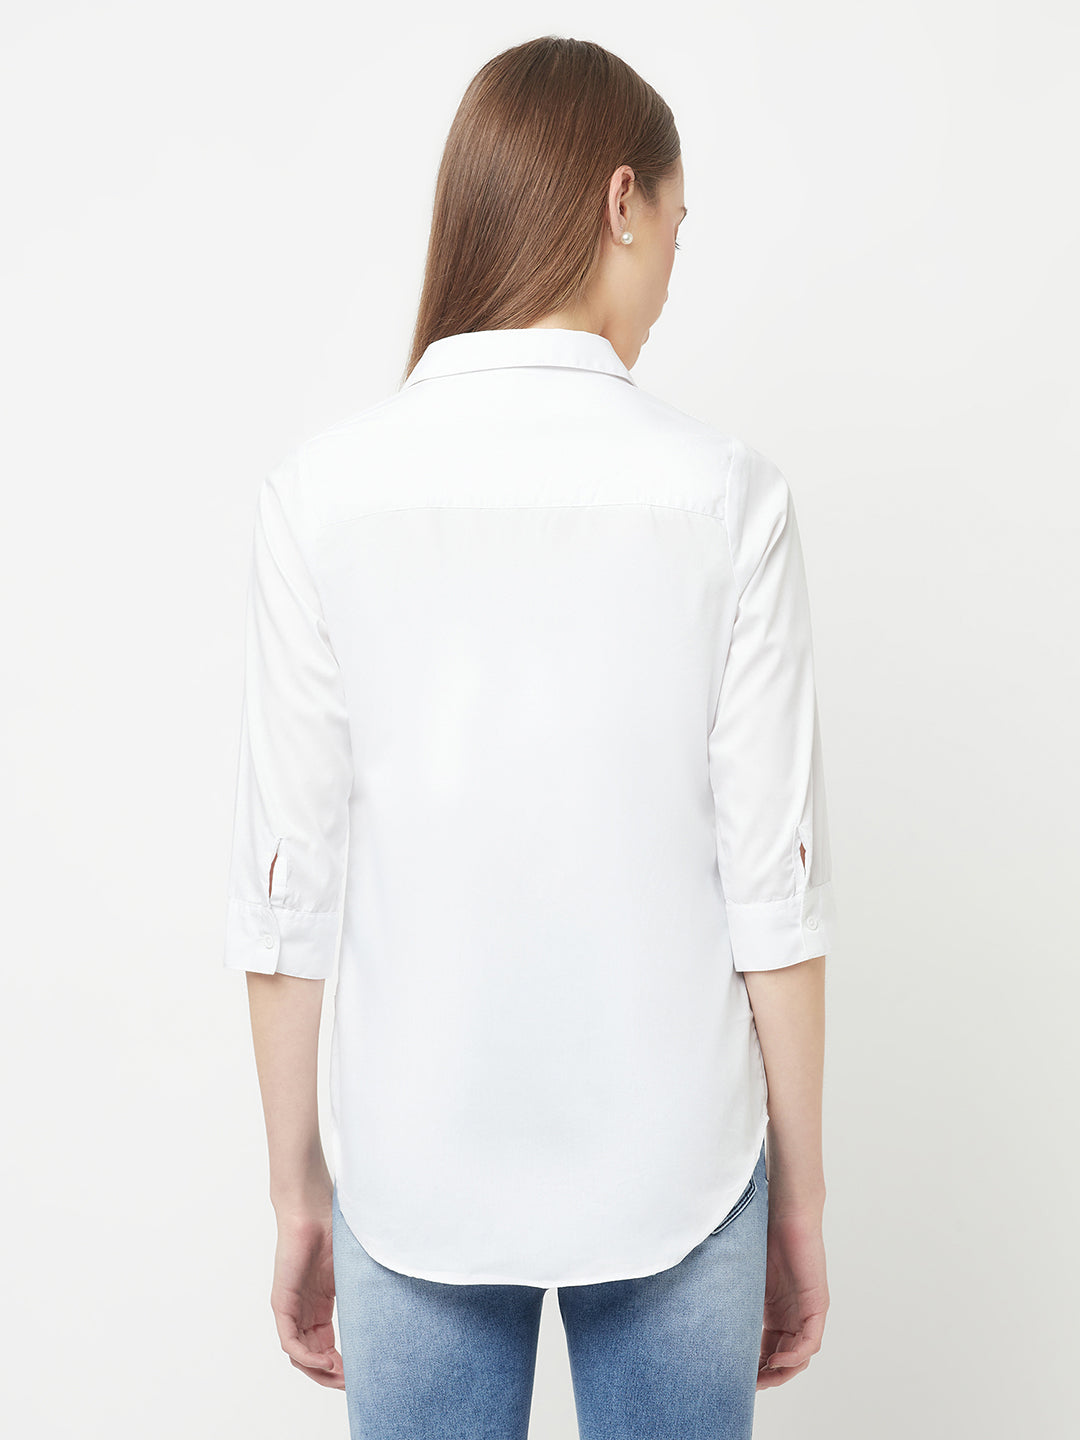 White Casual Shirt - Women Tops